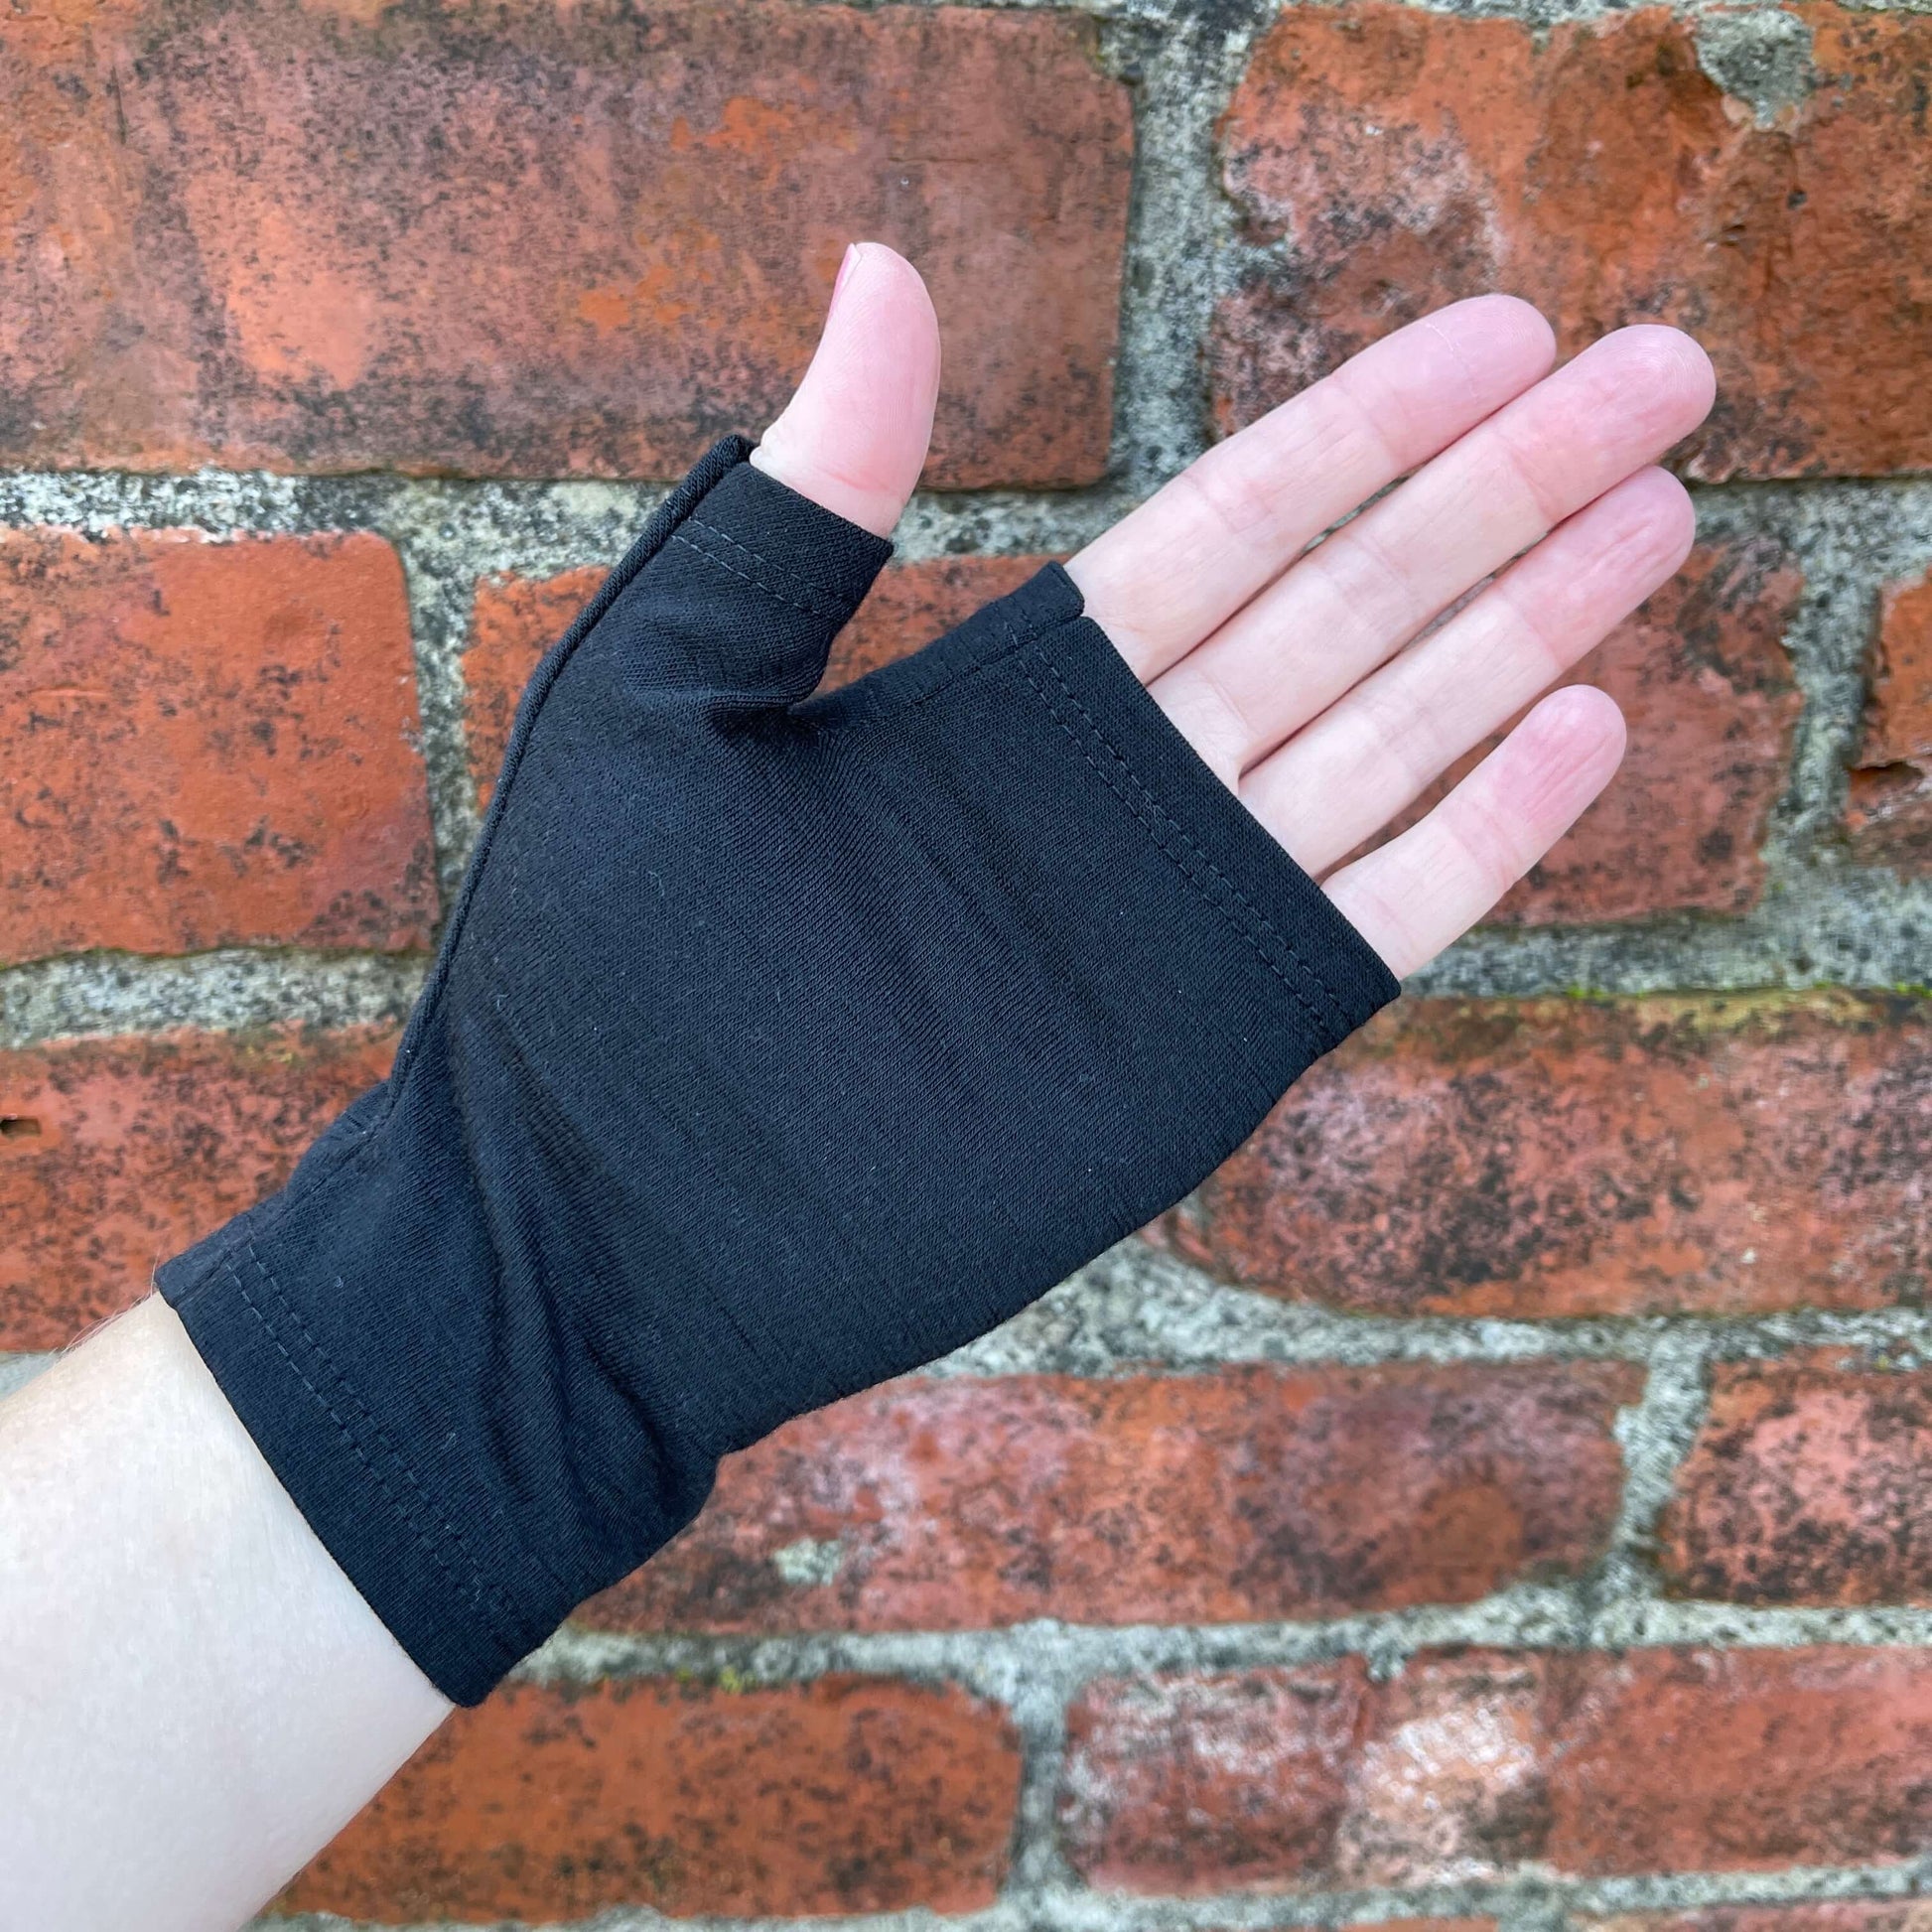 Fingerless merino gloves in plain black.